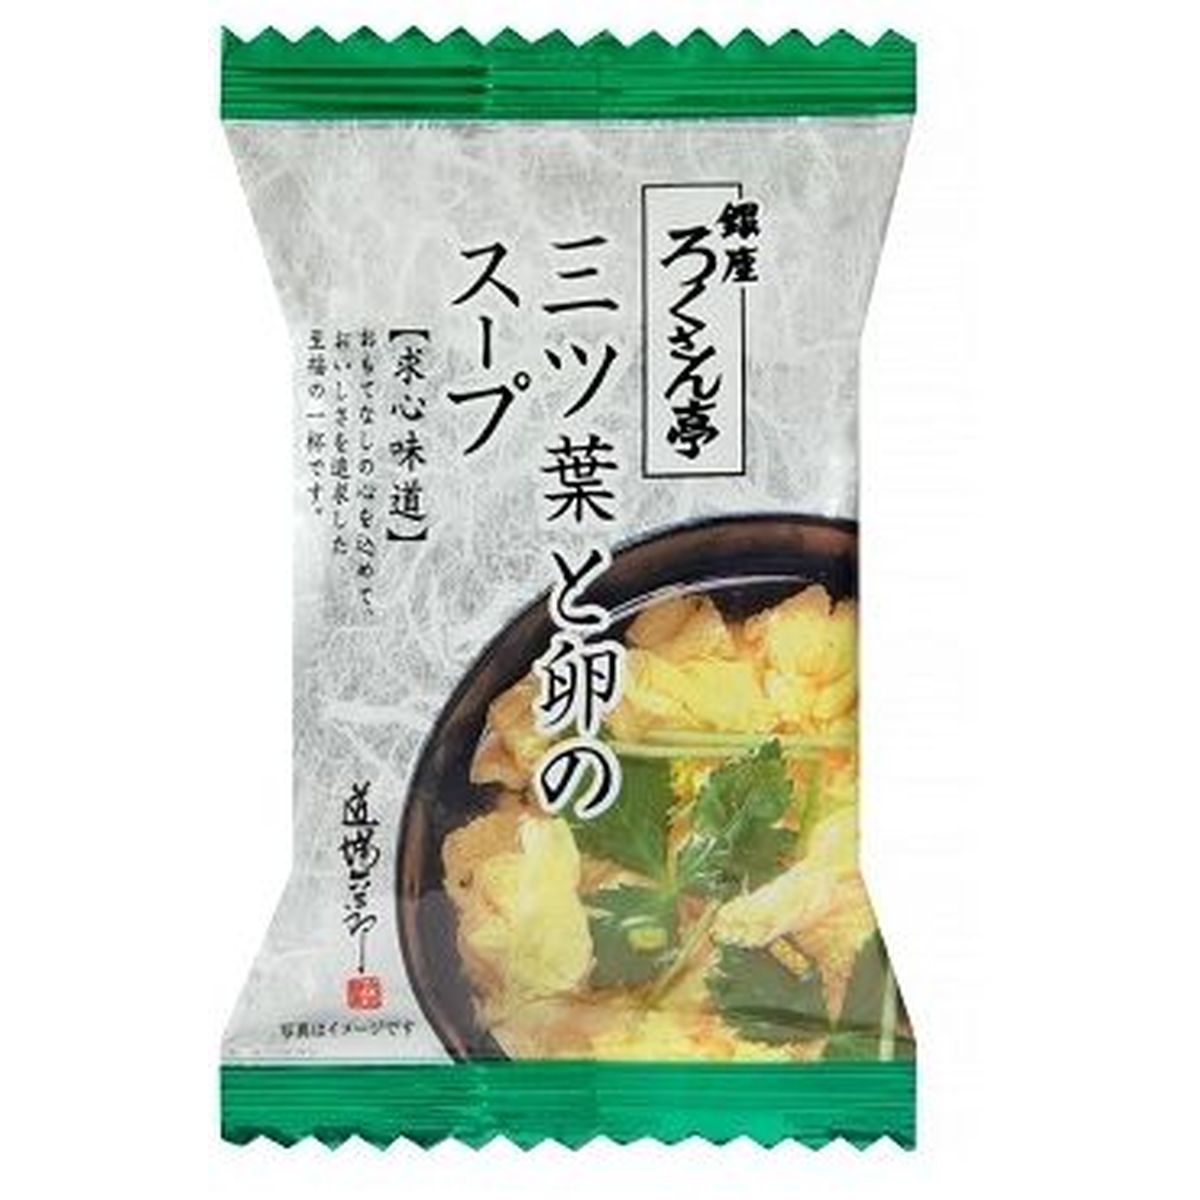 【10個入リ】トップ卵 ロクサン亭 三ツ葉ト卵ノスープ 5g